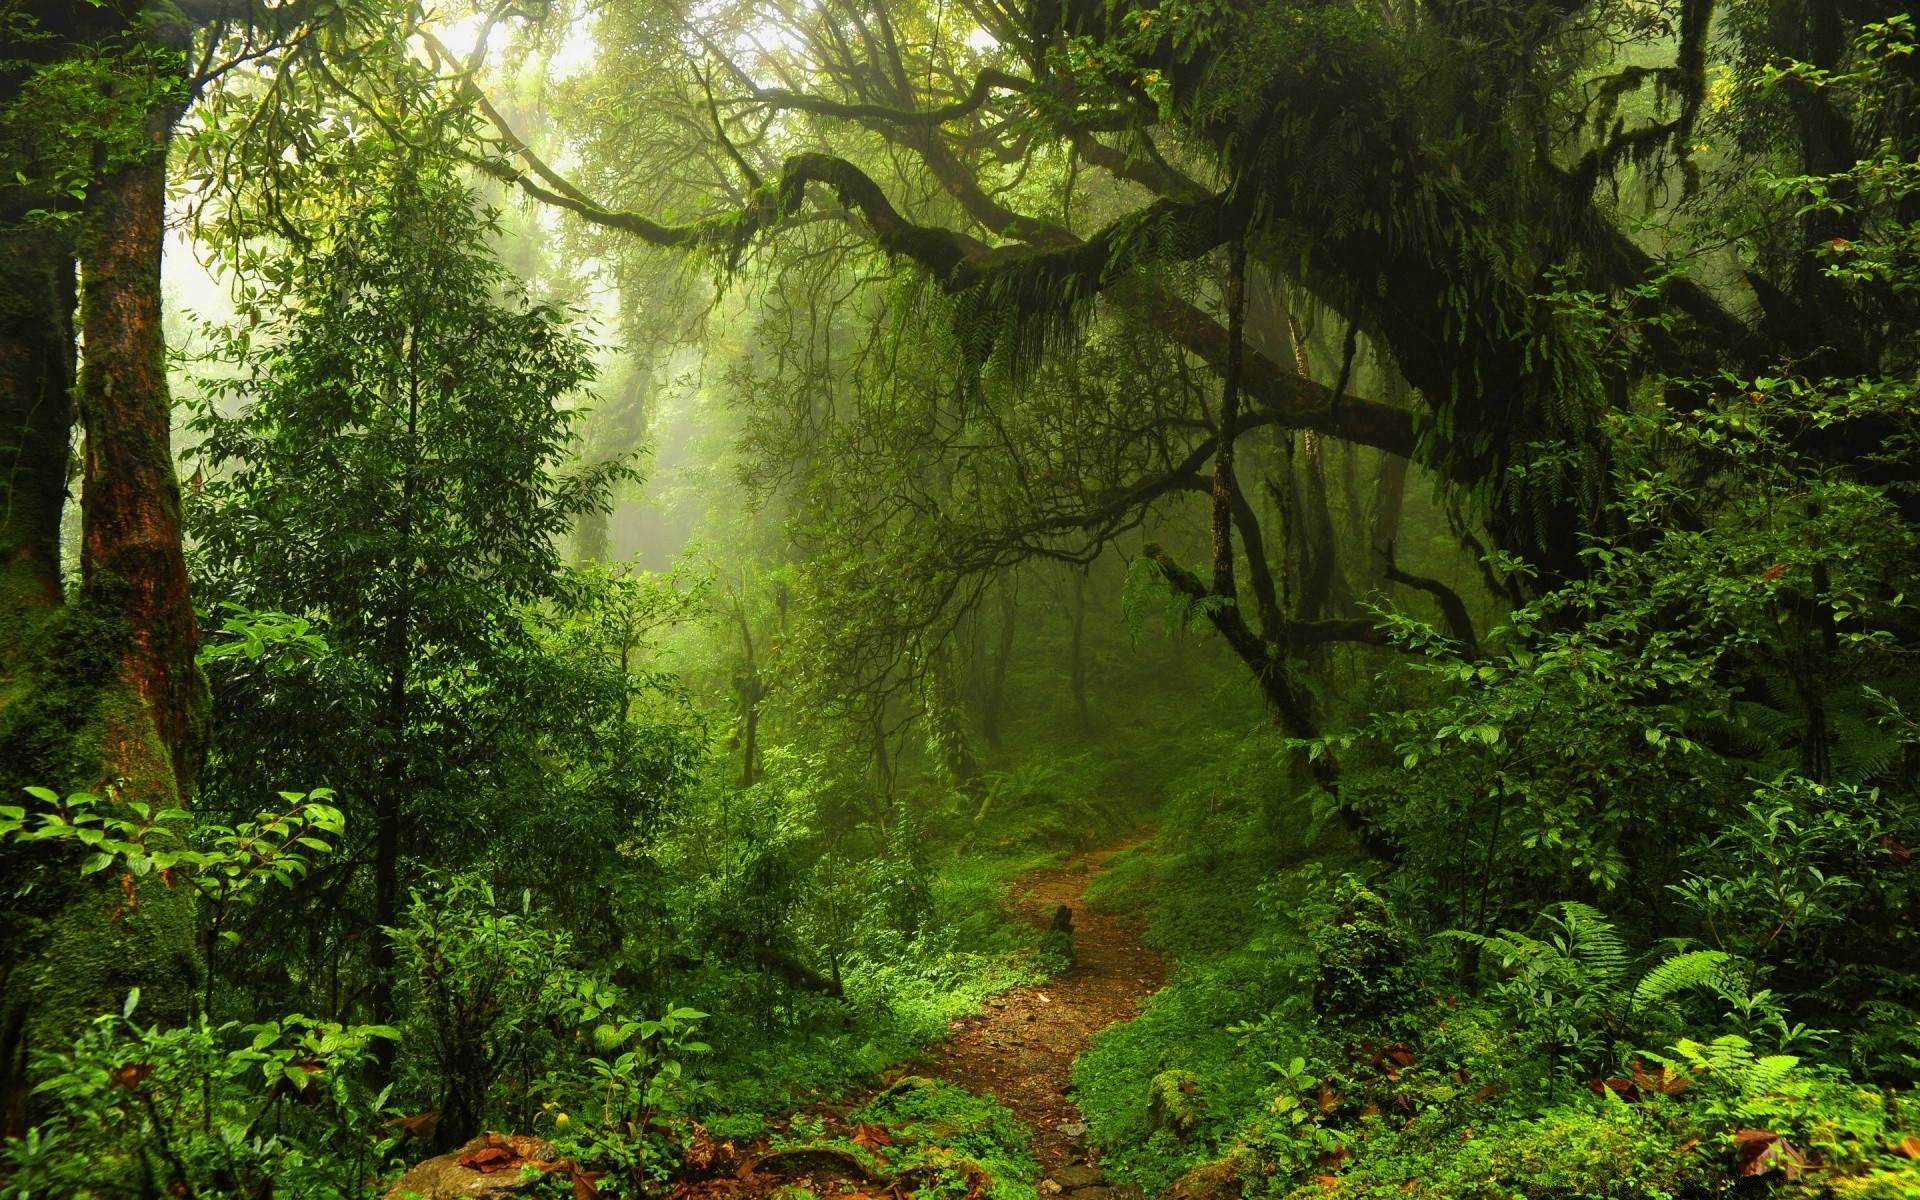 лес древесины лист дерево природа пейзаж пышные парк среды на открытом воздухе тропический лес живописный туман мох осень флора лето рассвет ферн хорошую погоду